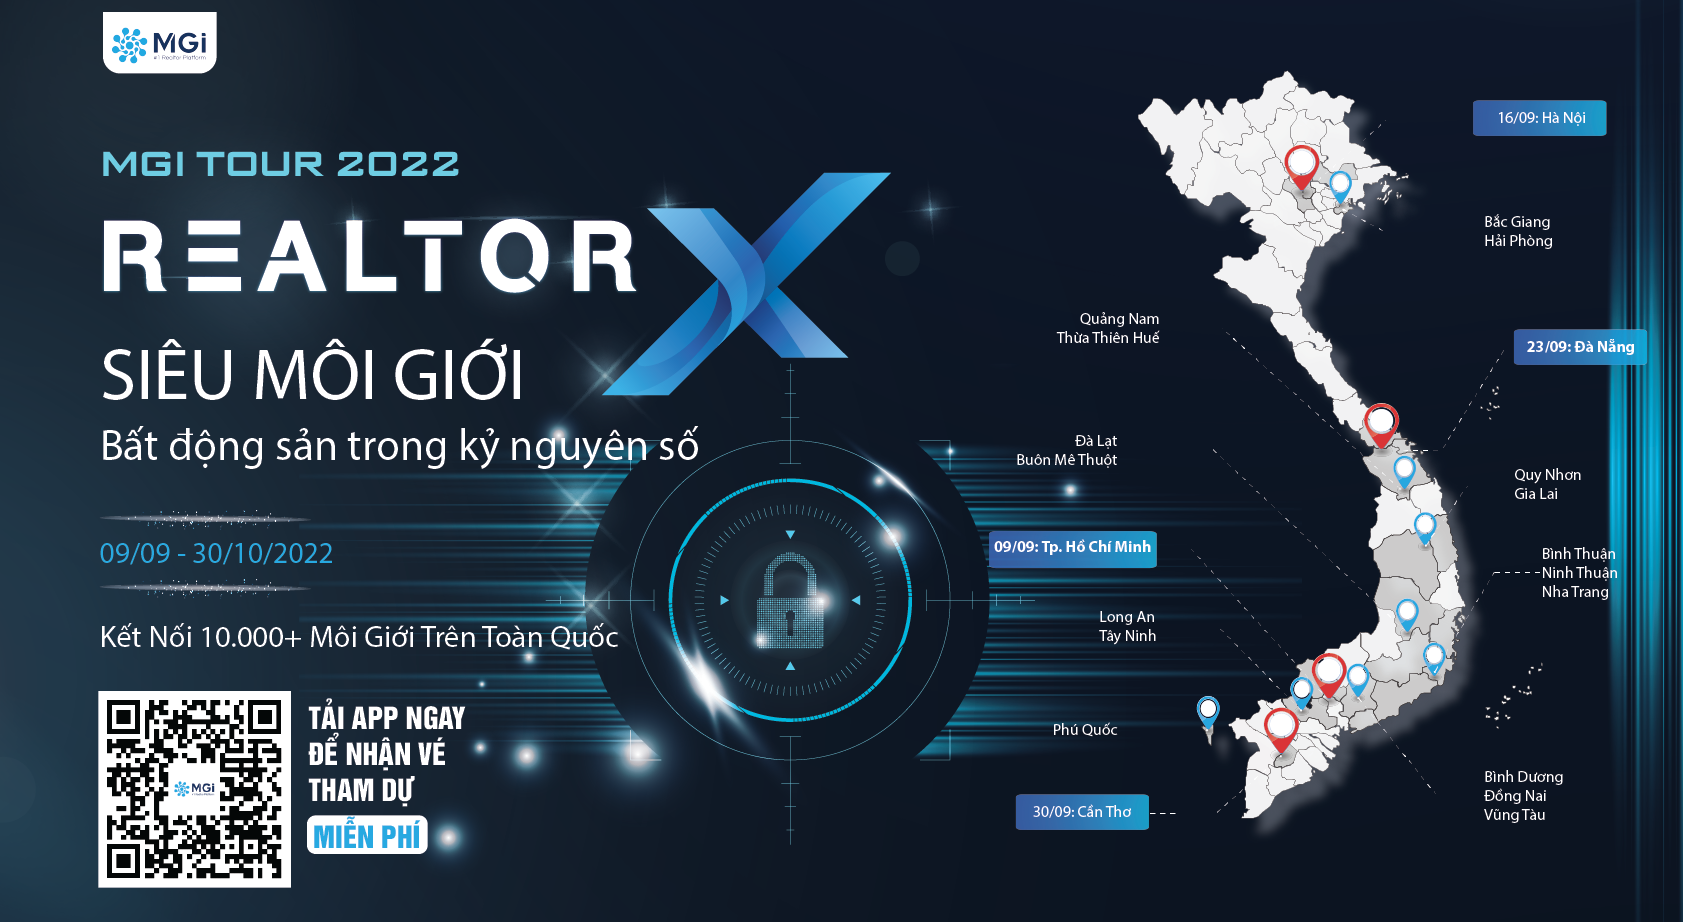 MGi Tour 2022: Realtorx – Môi giới bất động sản trong kỷ nguyên số